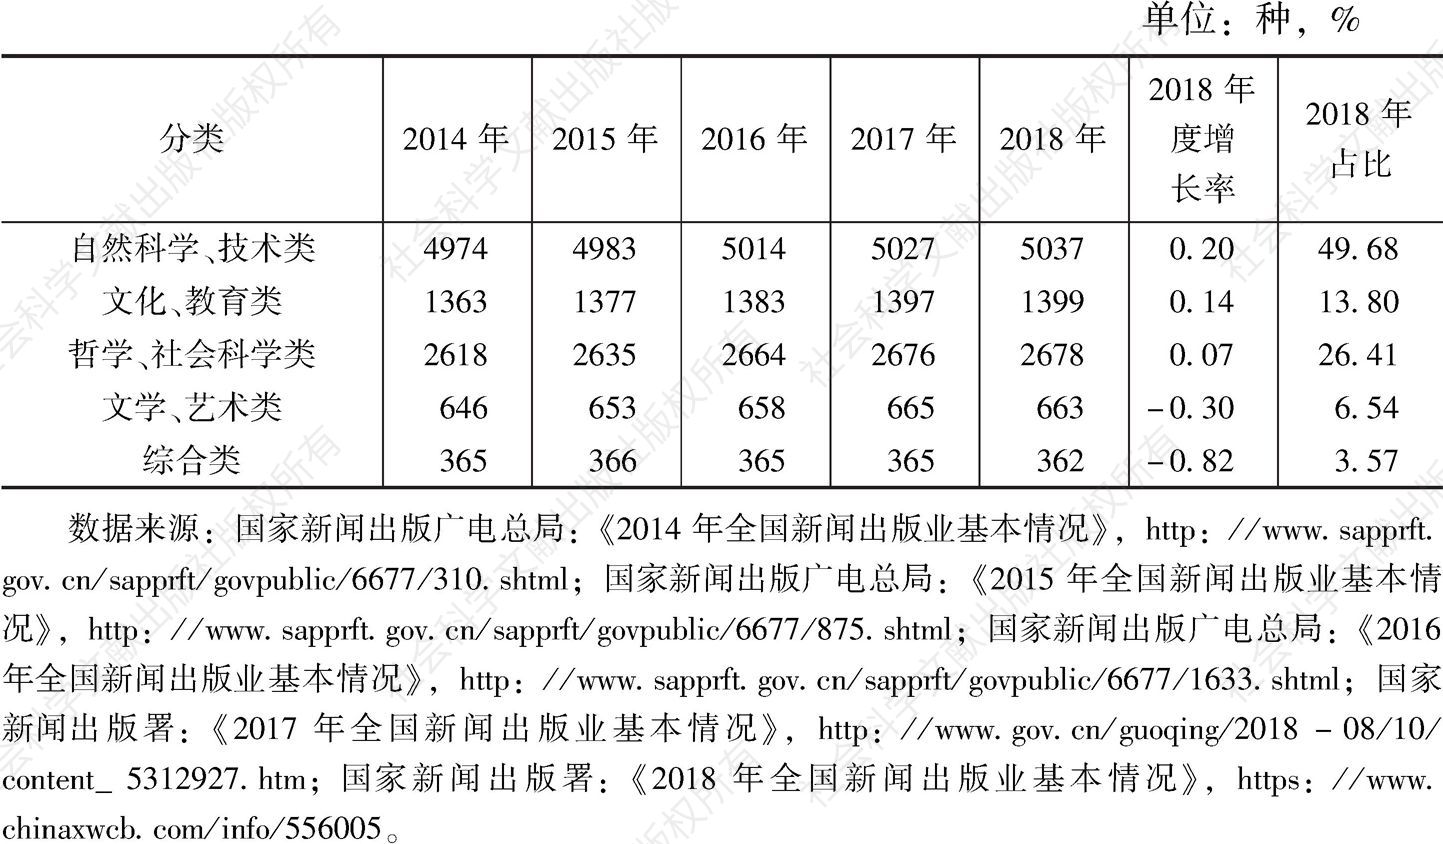 表6 2014～2018年期刊分类品种统计（按上一年度增长率从高到低排序）